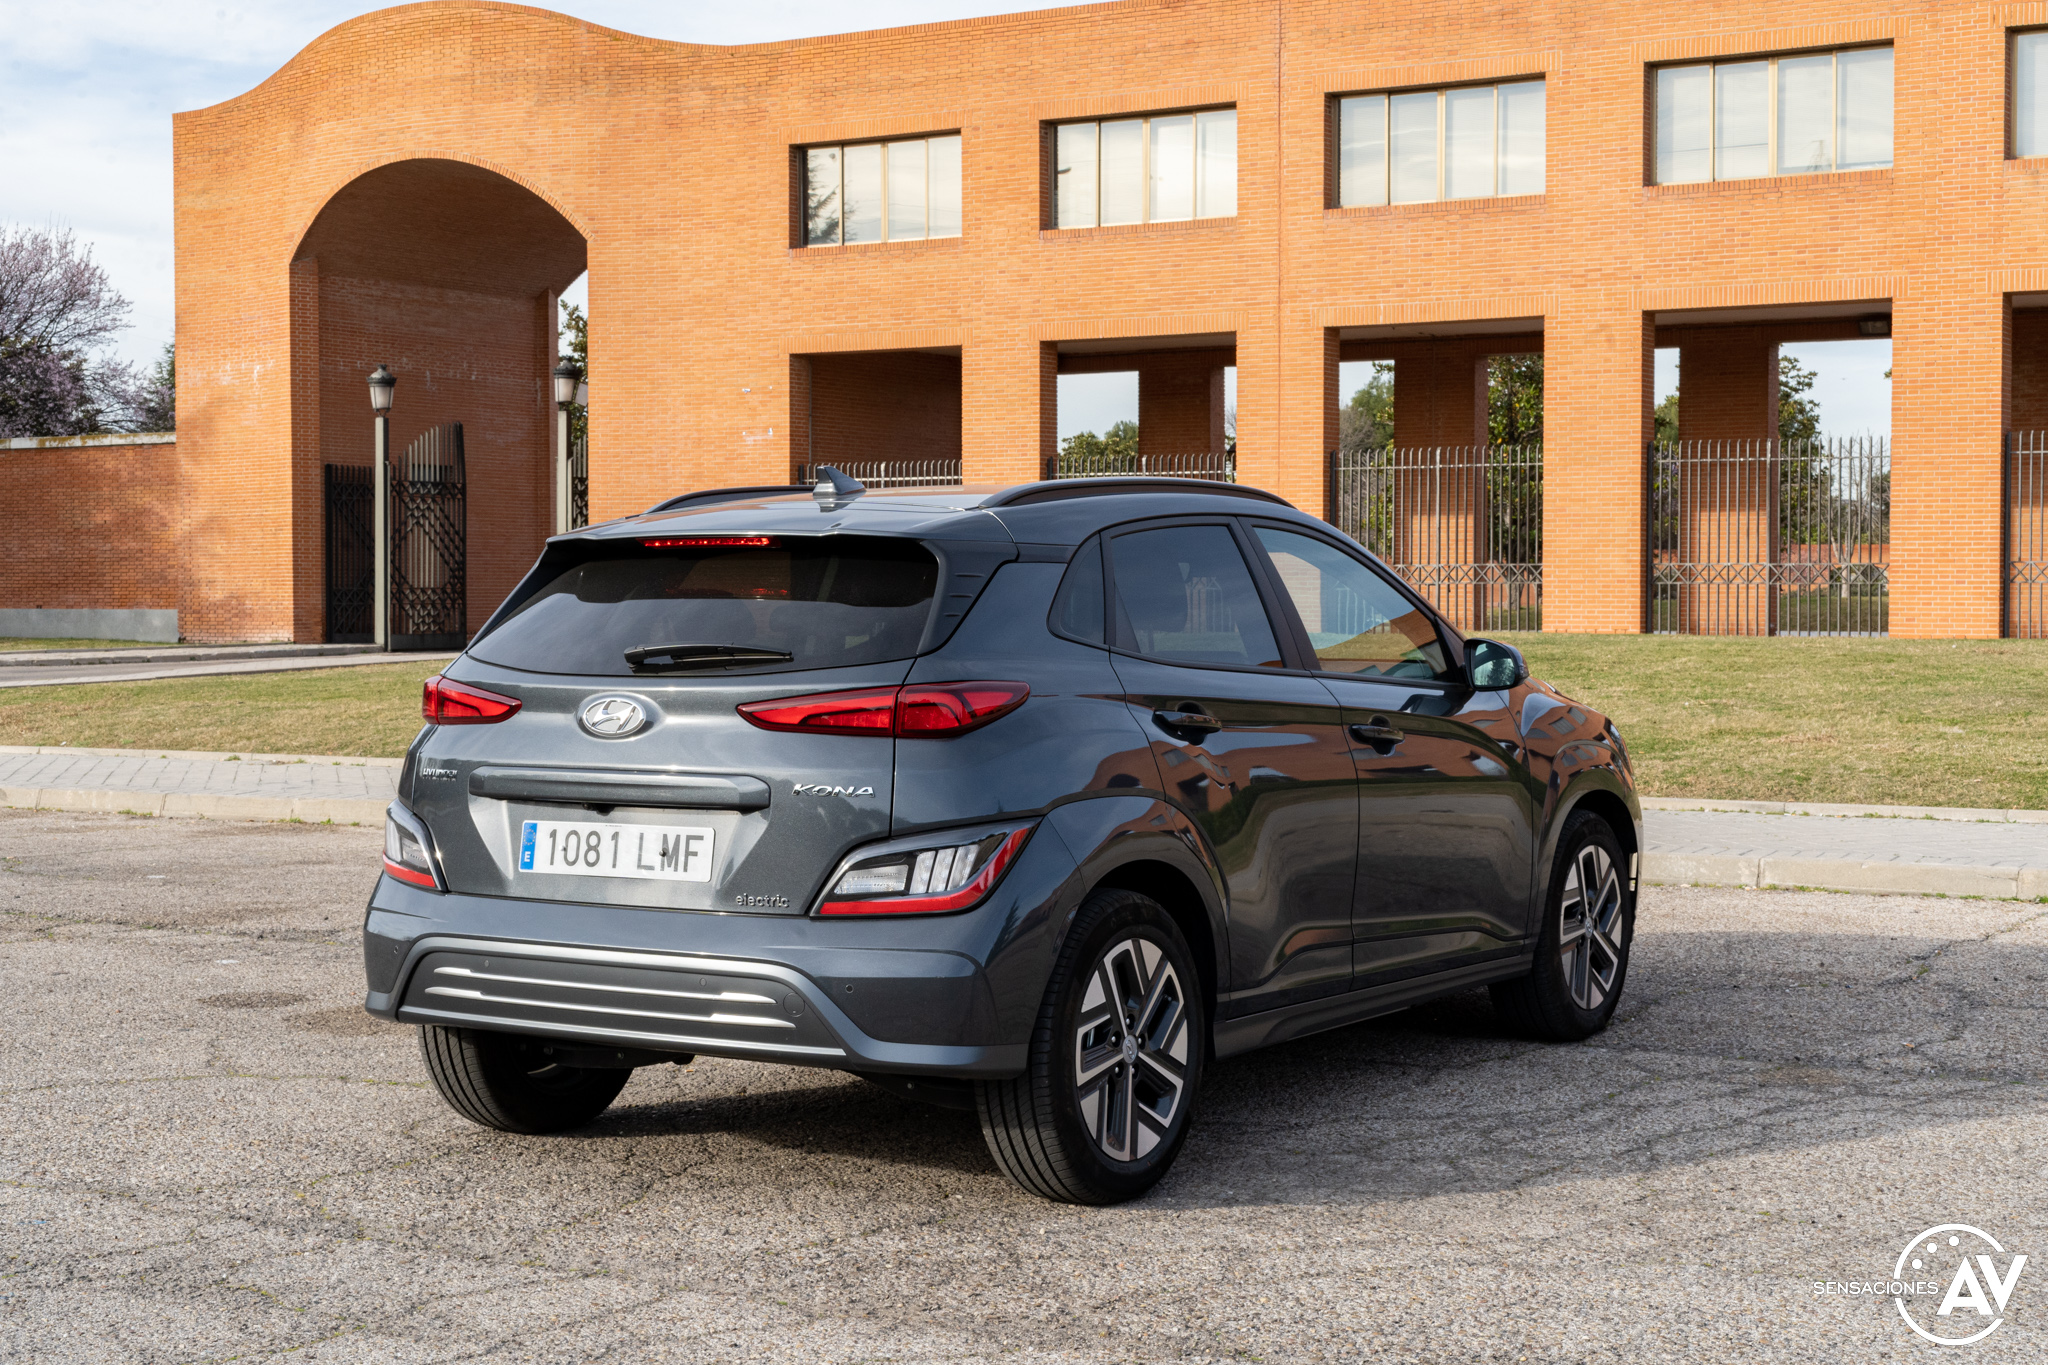 Trasera lateral derecho - Prueba Hyundai Kona eléctrico 2022 Sky: ¿El mejor coche eléctrico que puedes comprar?